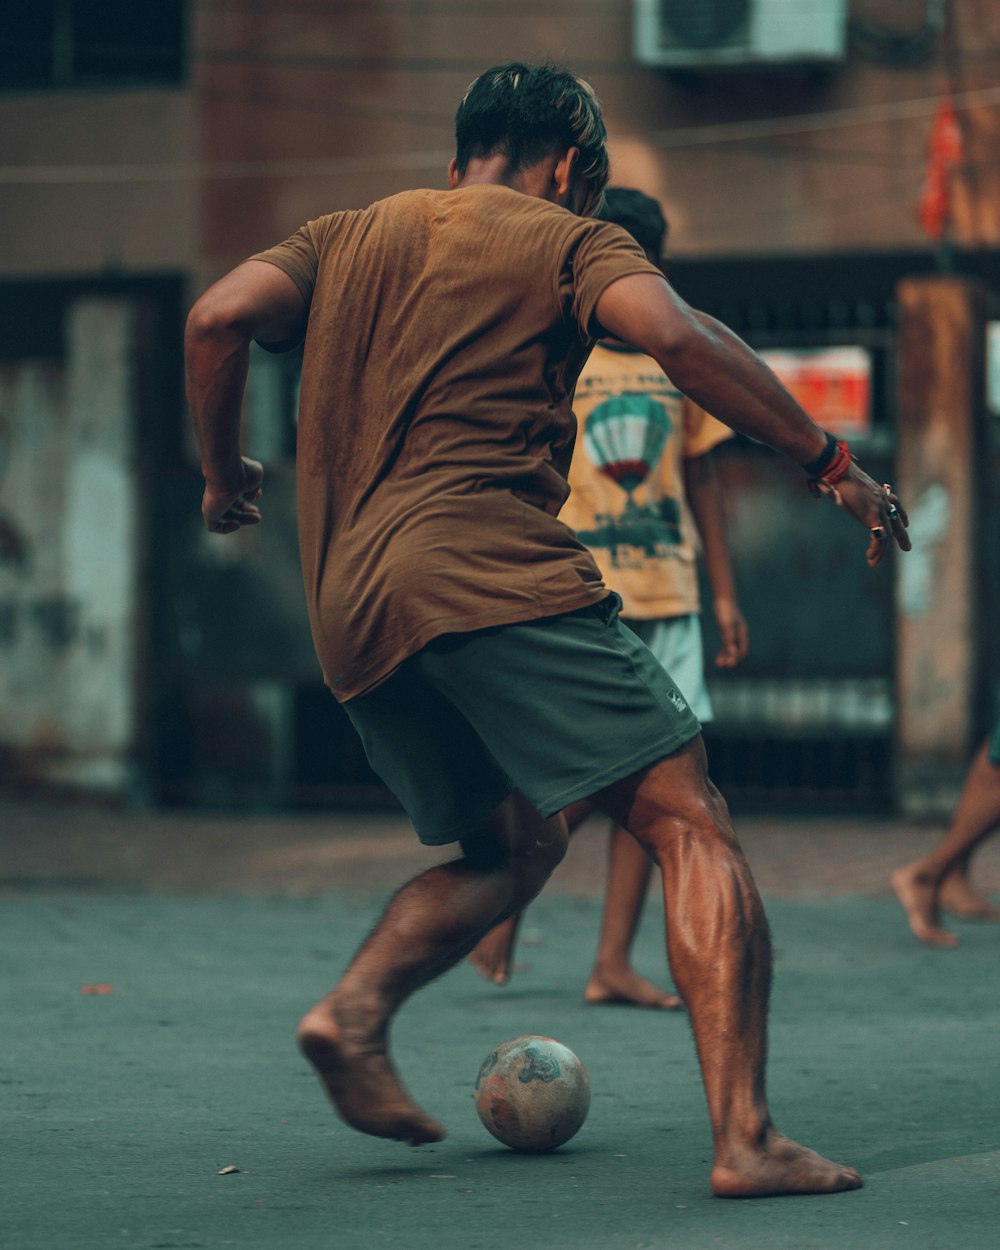 a man kicking a soccer ball on a street